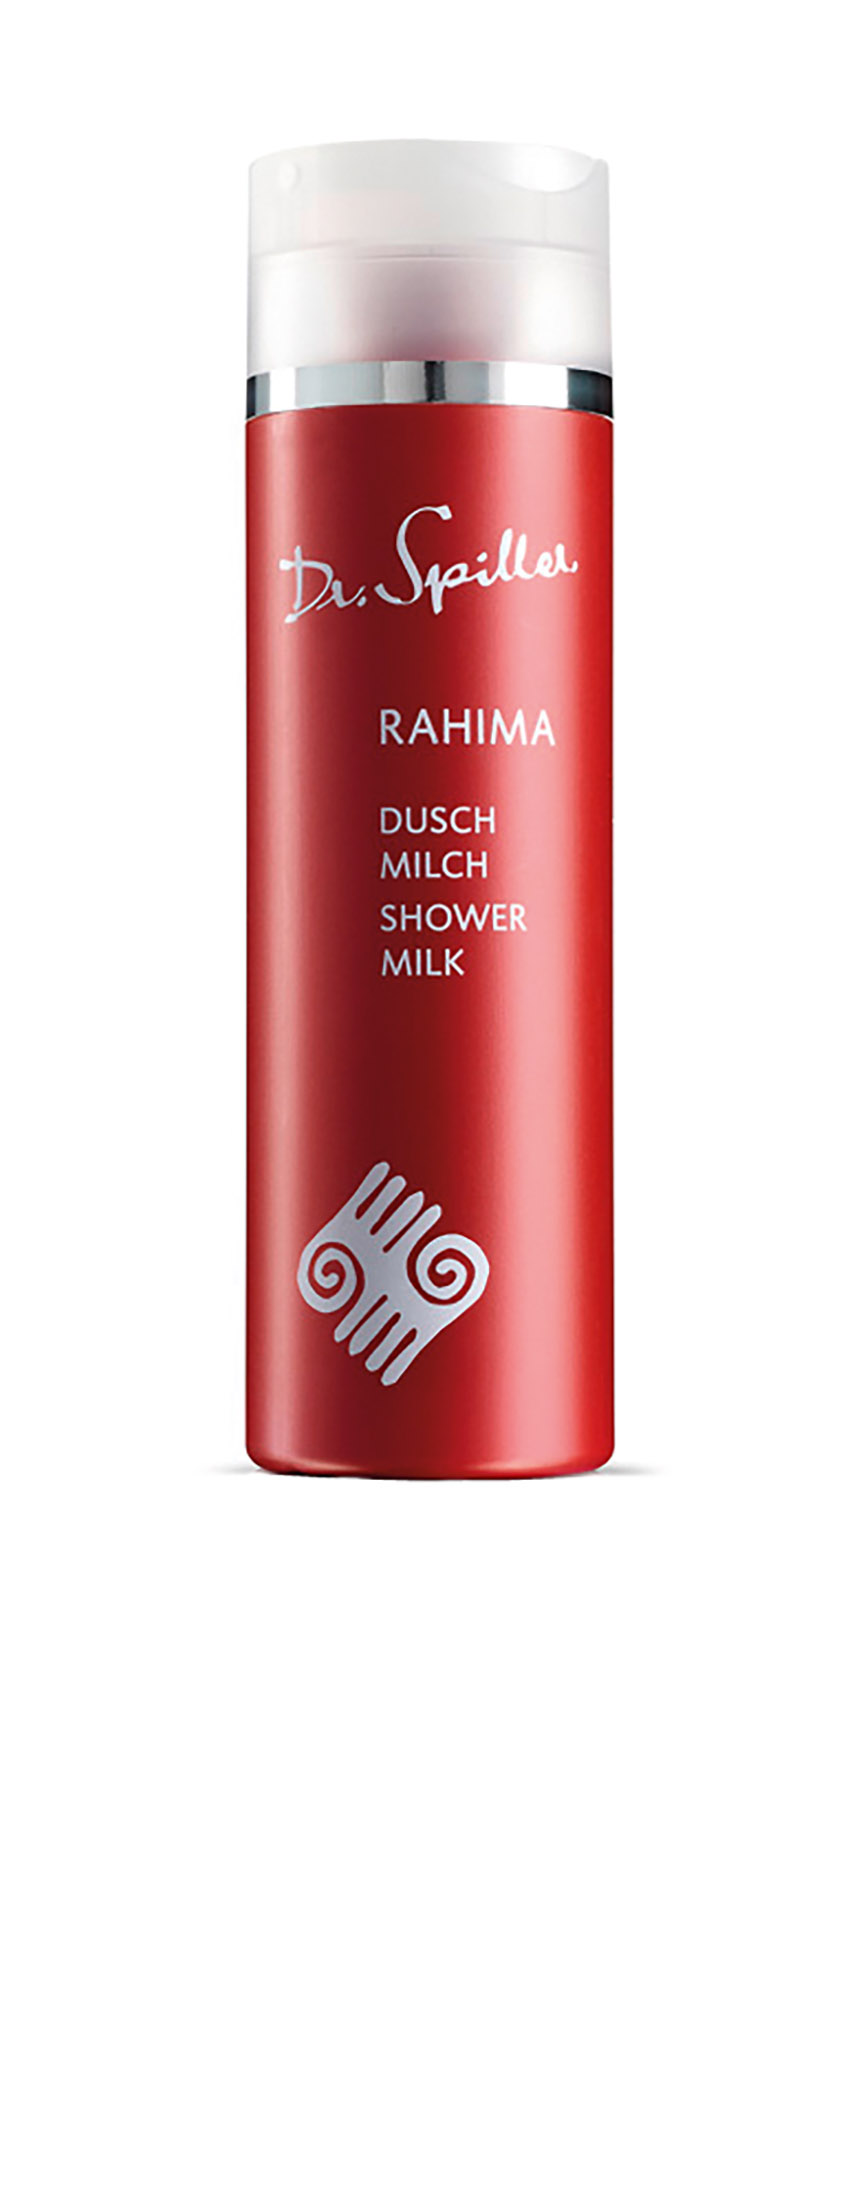 RAHIMA Duschmilch 200 ml